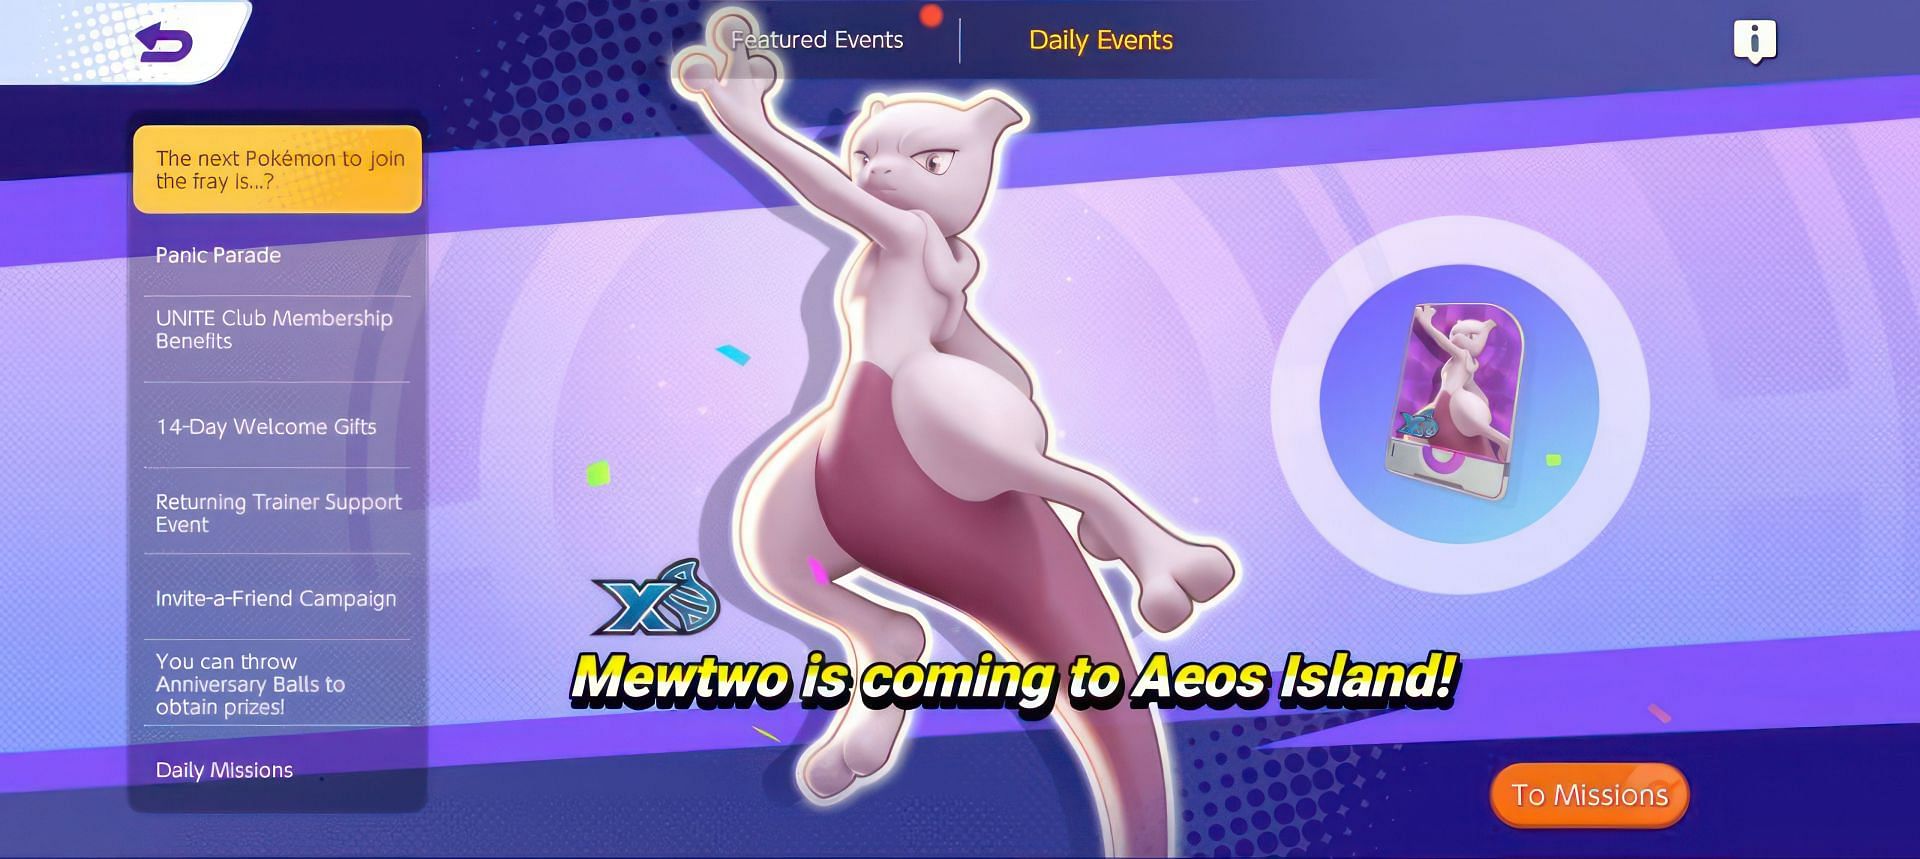 How to get Mega Mewtwo X in Pokemon Unite